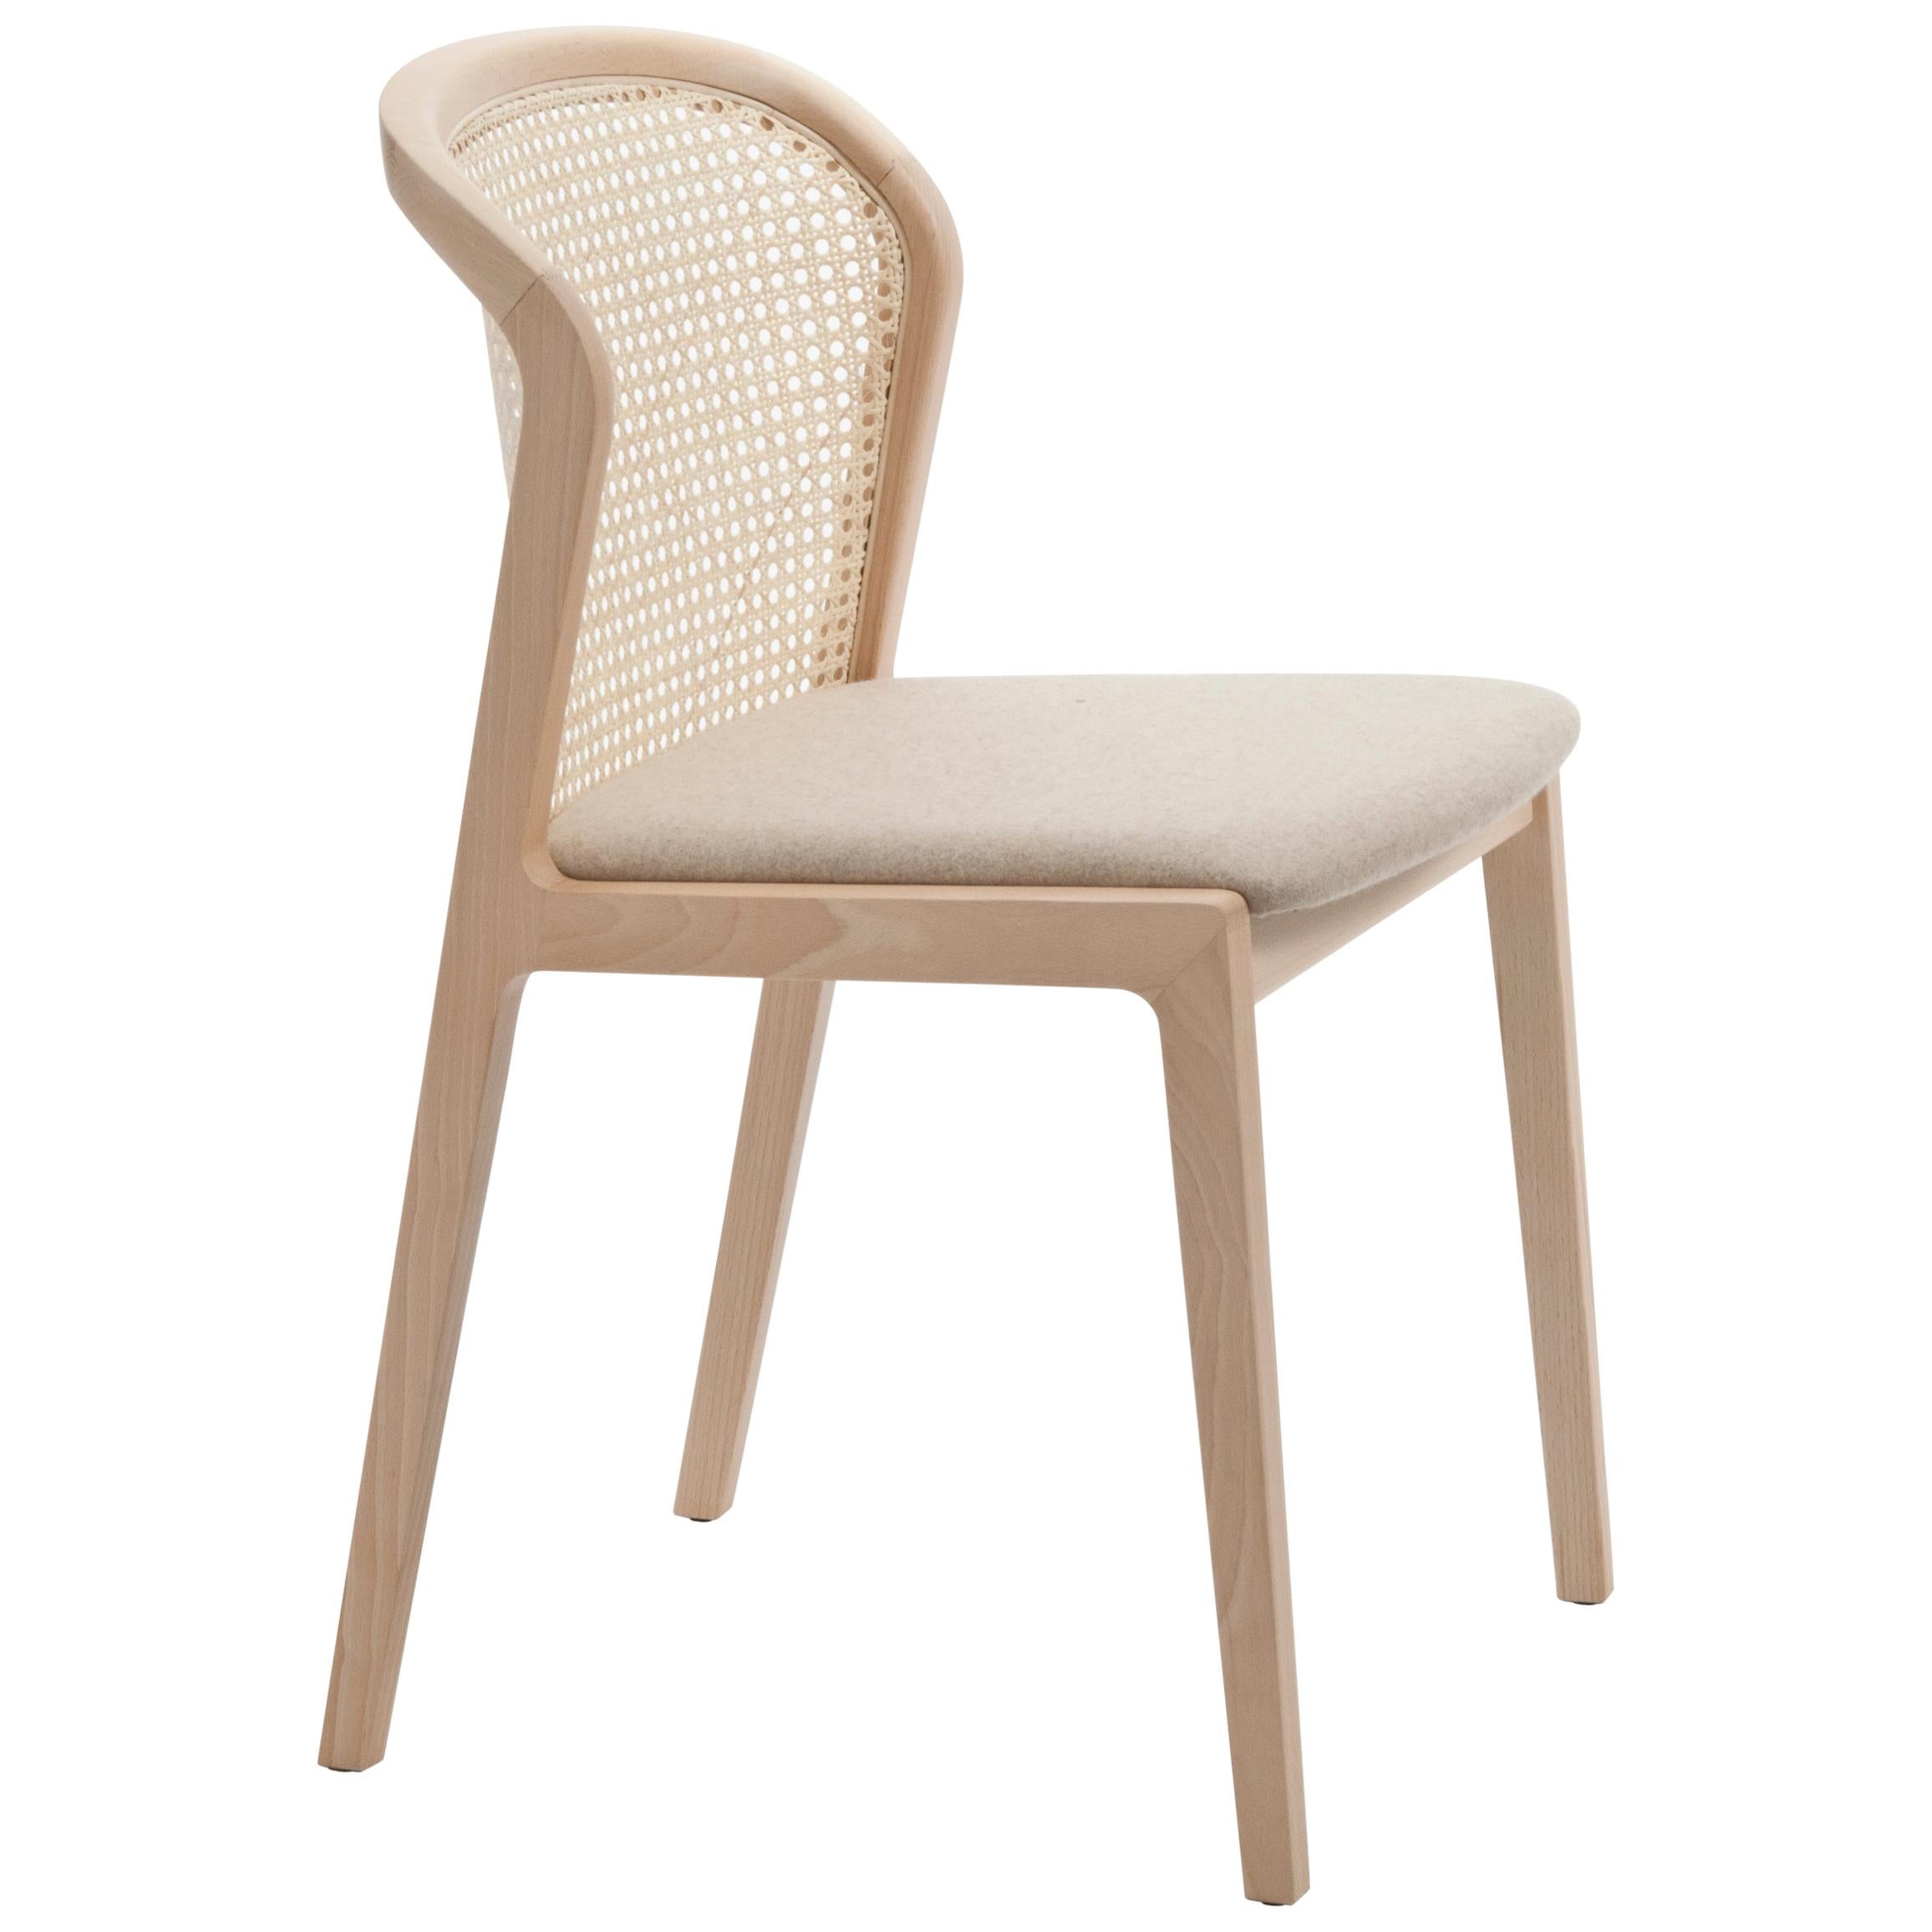 Chaise Vienna, Design/One contemporain inspiré des chaises traditionnelles en paille en vente